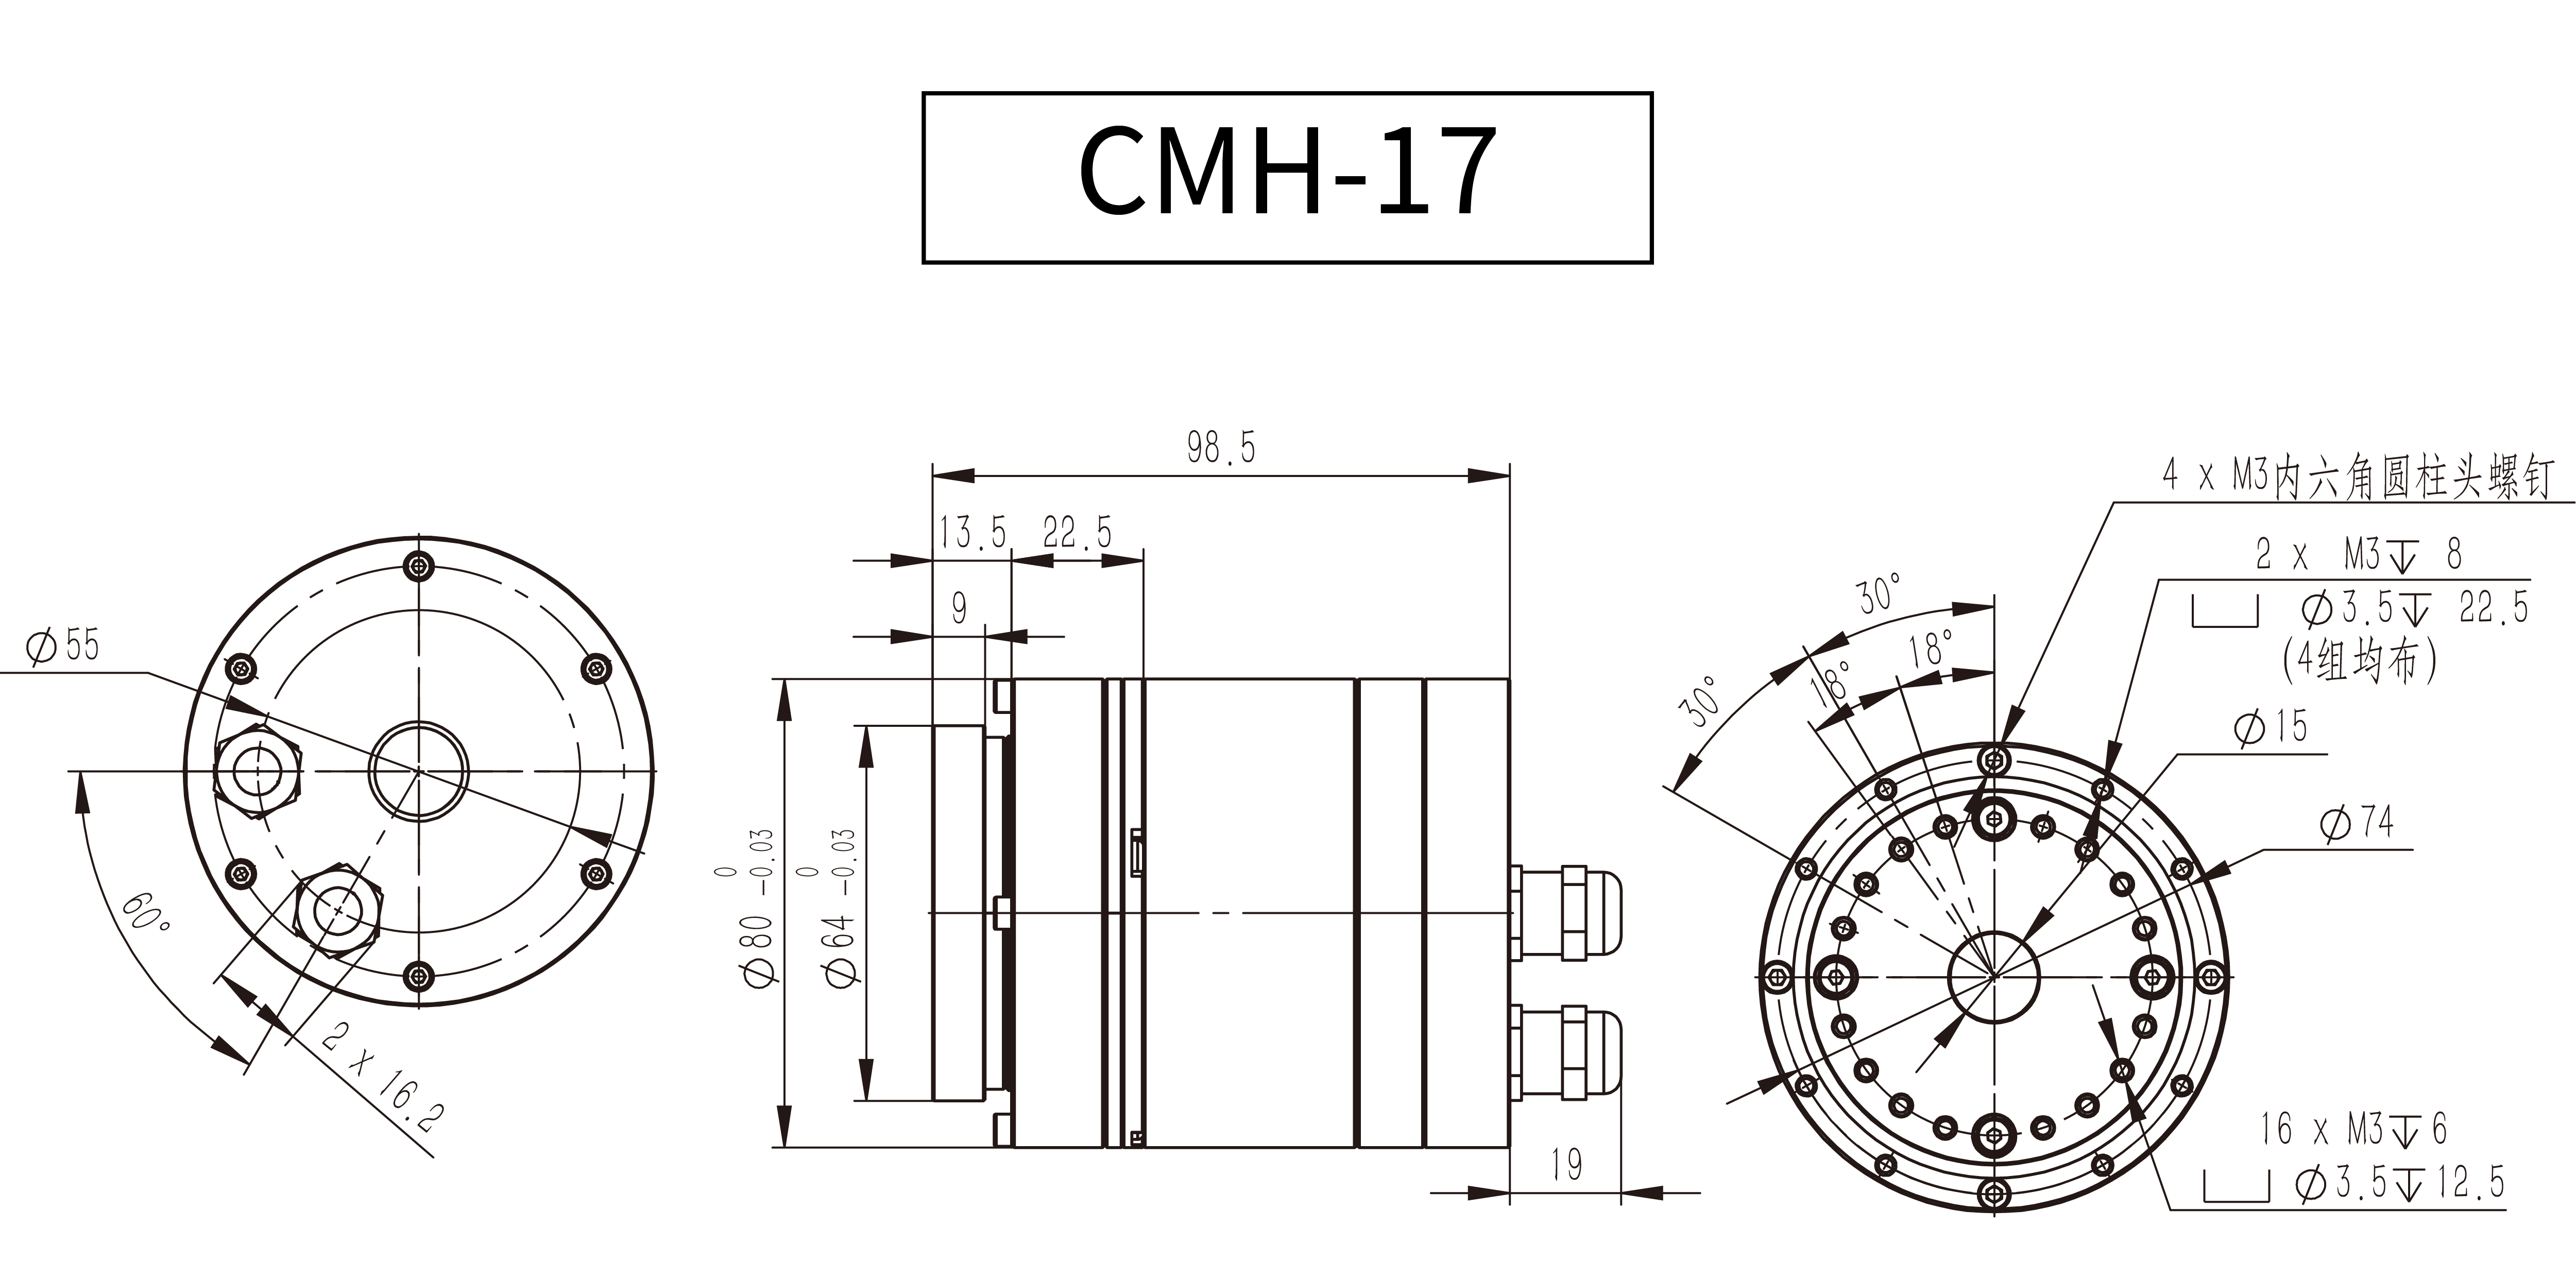 高压模组_CMH-17.jpg